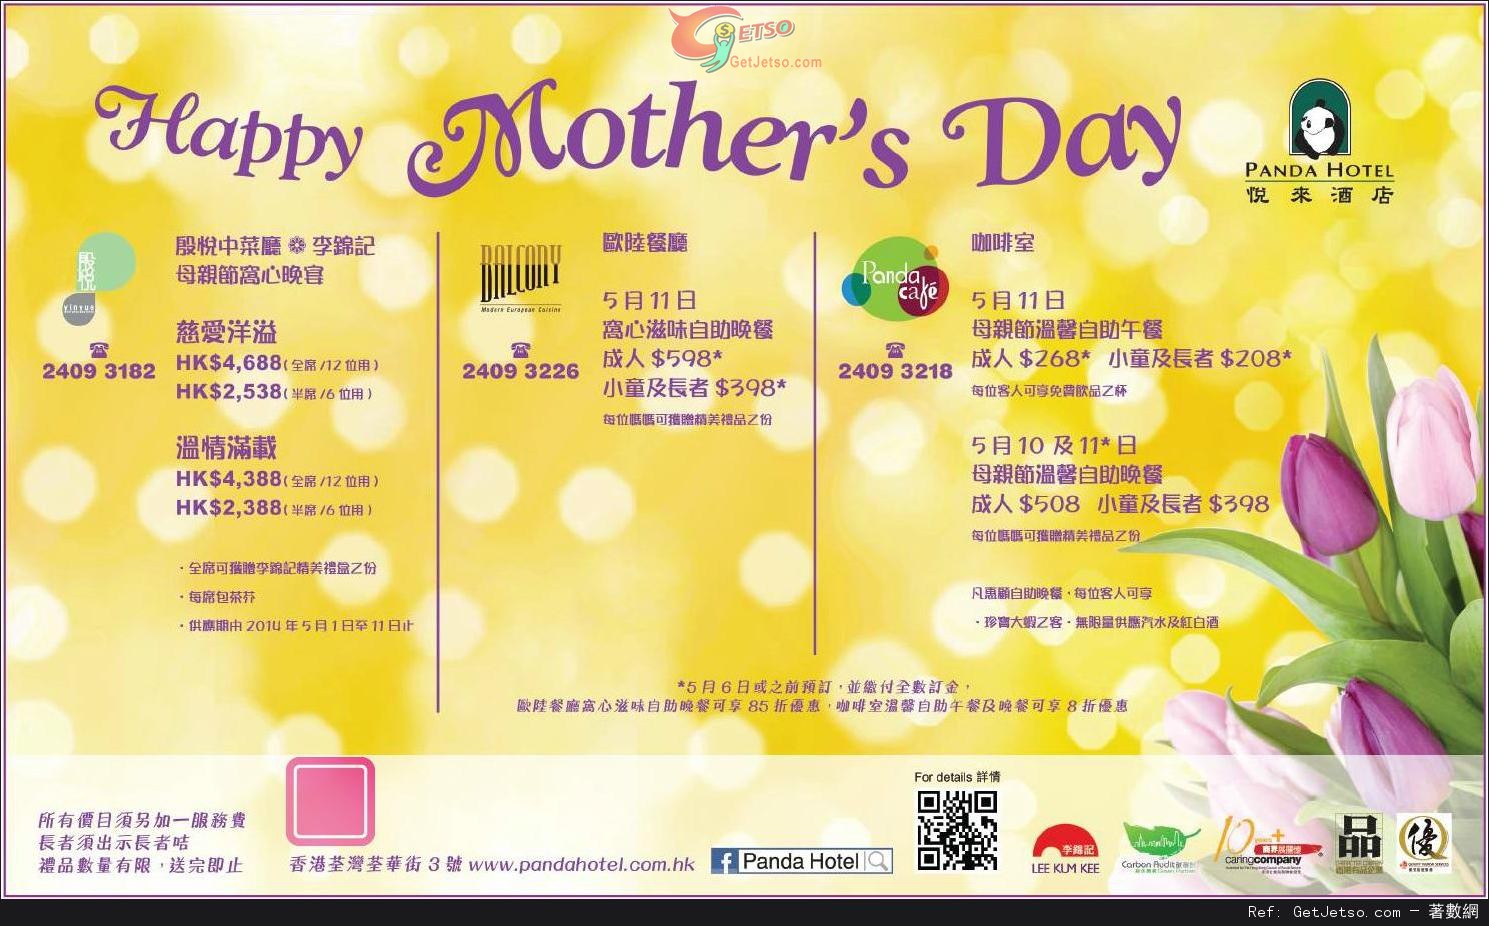 悅來酒店母親節自助餐85折預訂優惠(至14年5月6日)圖片1